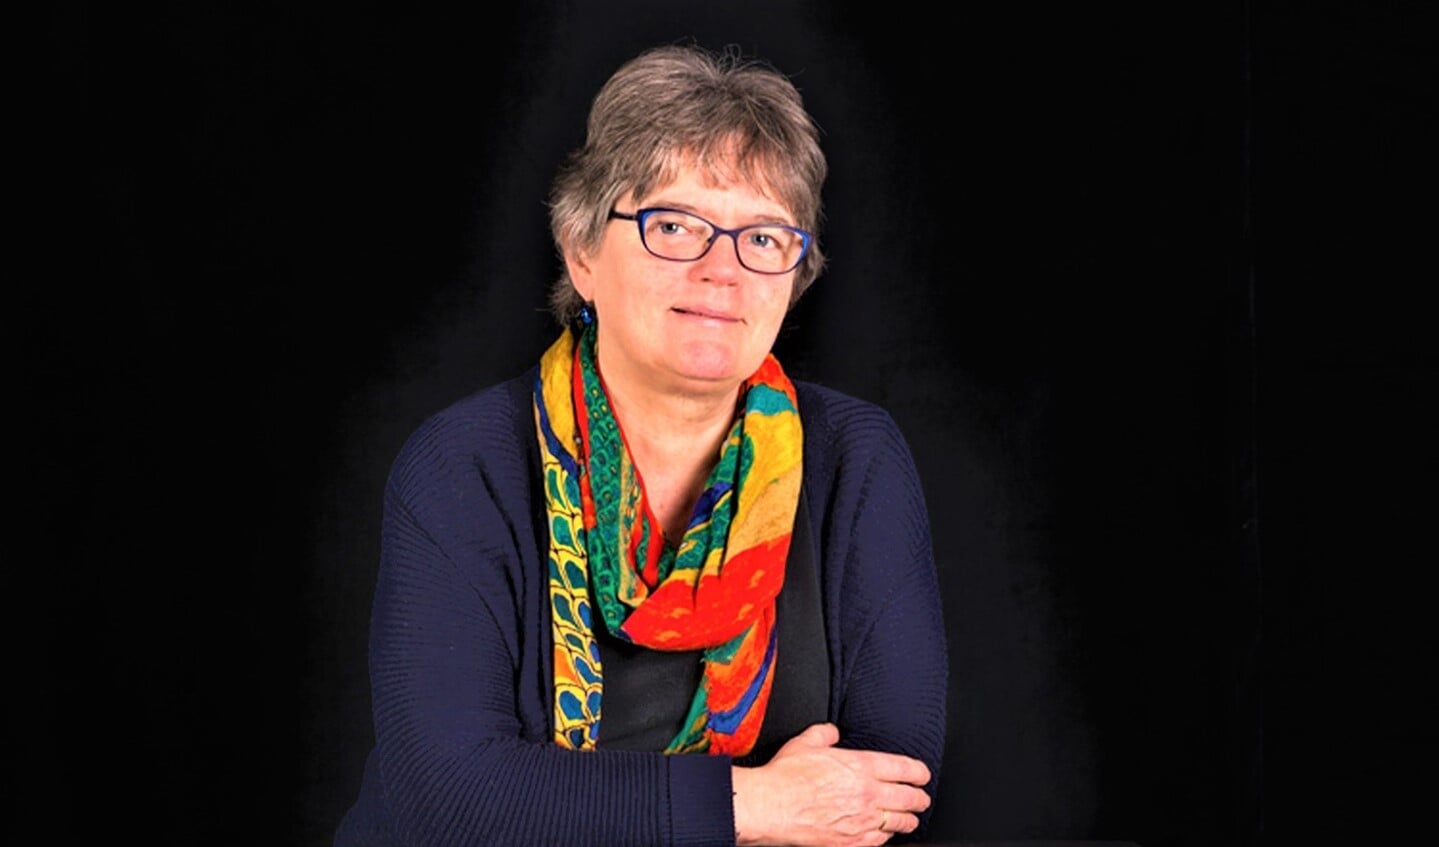 Christin Kliphuis is een veelzijdig schrijfster. Zij schreef 21 kinderboeken, 2 autobiografische boeken en diverse gedichten en blogs. 